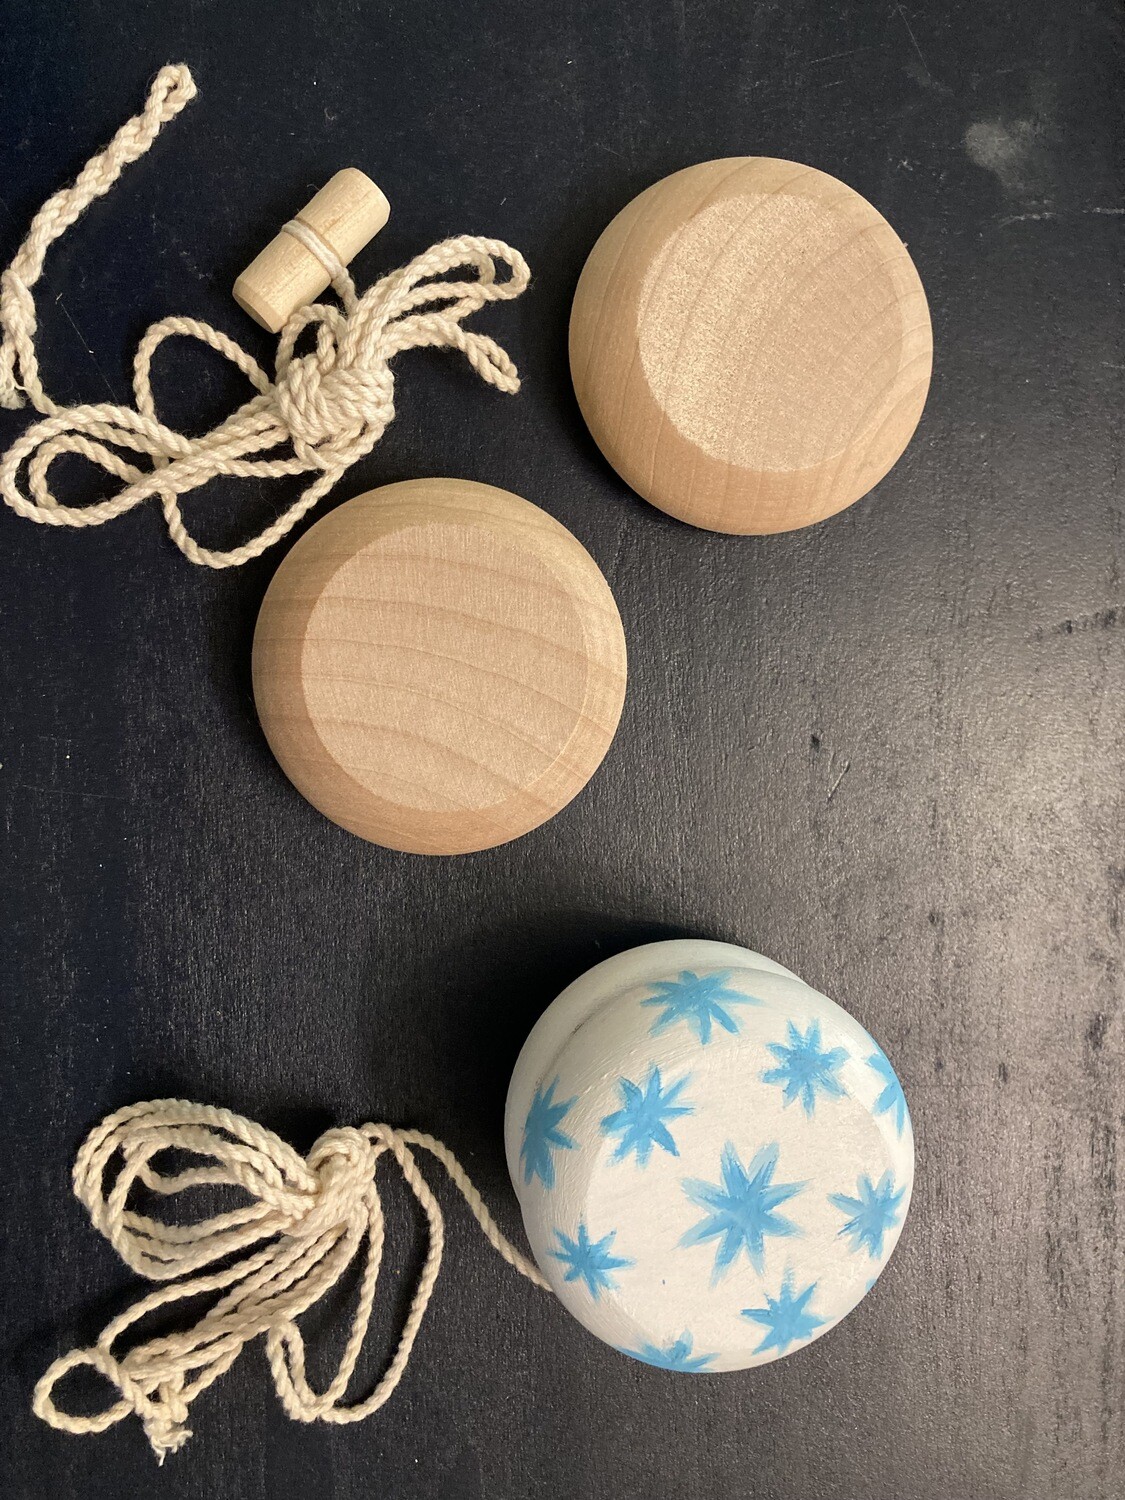 Yo-yo craft